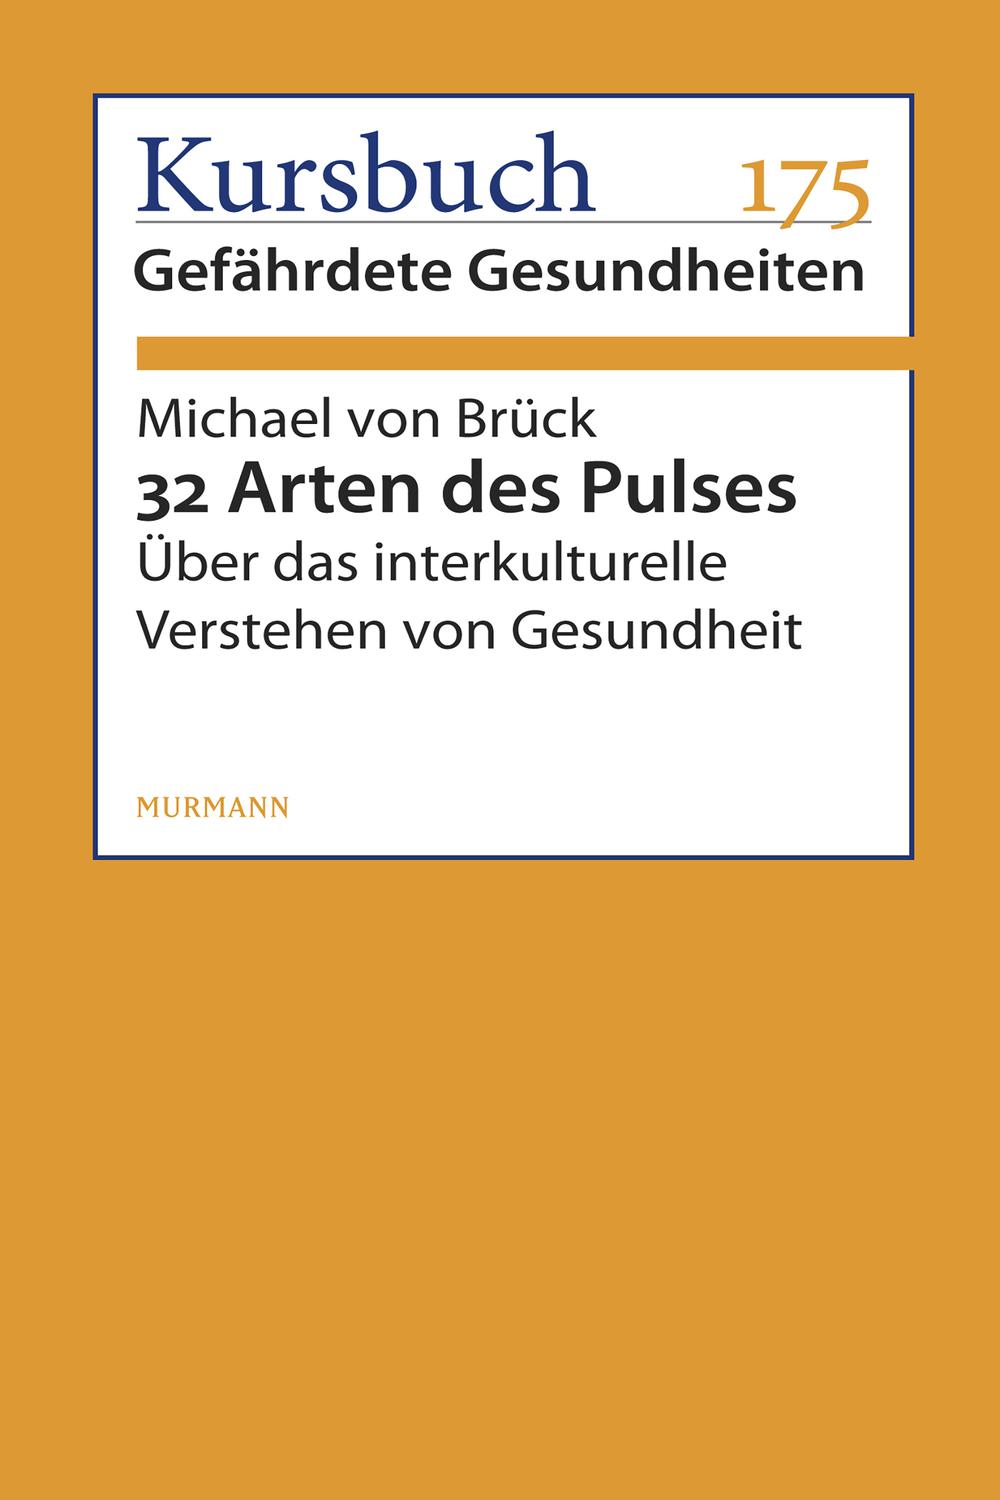 32 Arten des Pulses - Michael von Brück